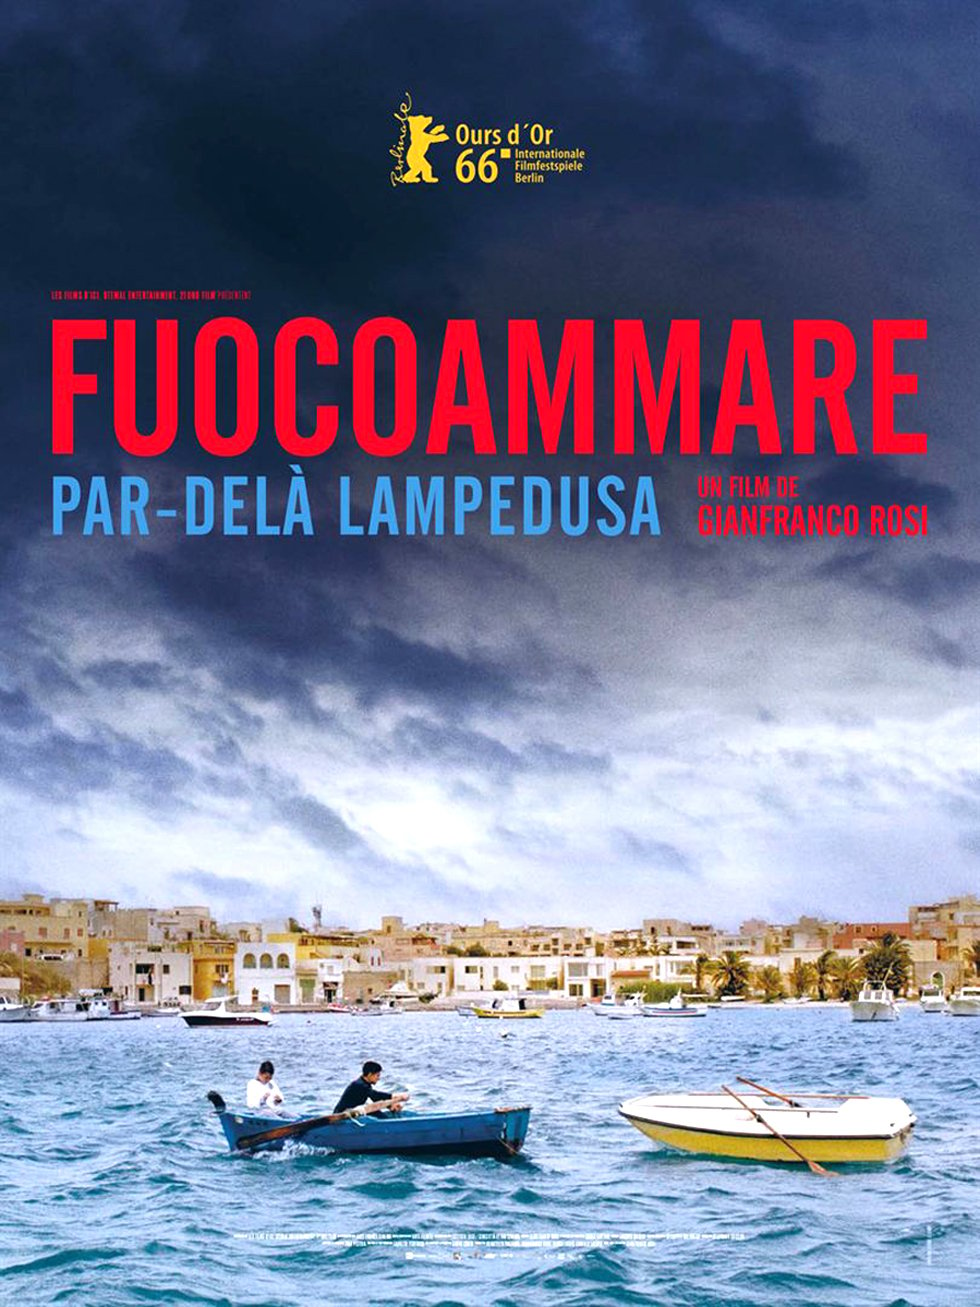 fuocoammare, par-dela Lampedusa, de Gianfranco (sortie en france le 28 septembre). &copy; 21 uno film